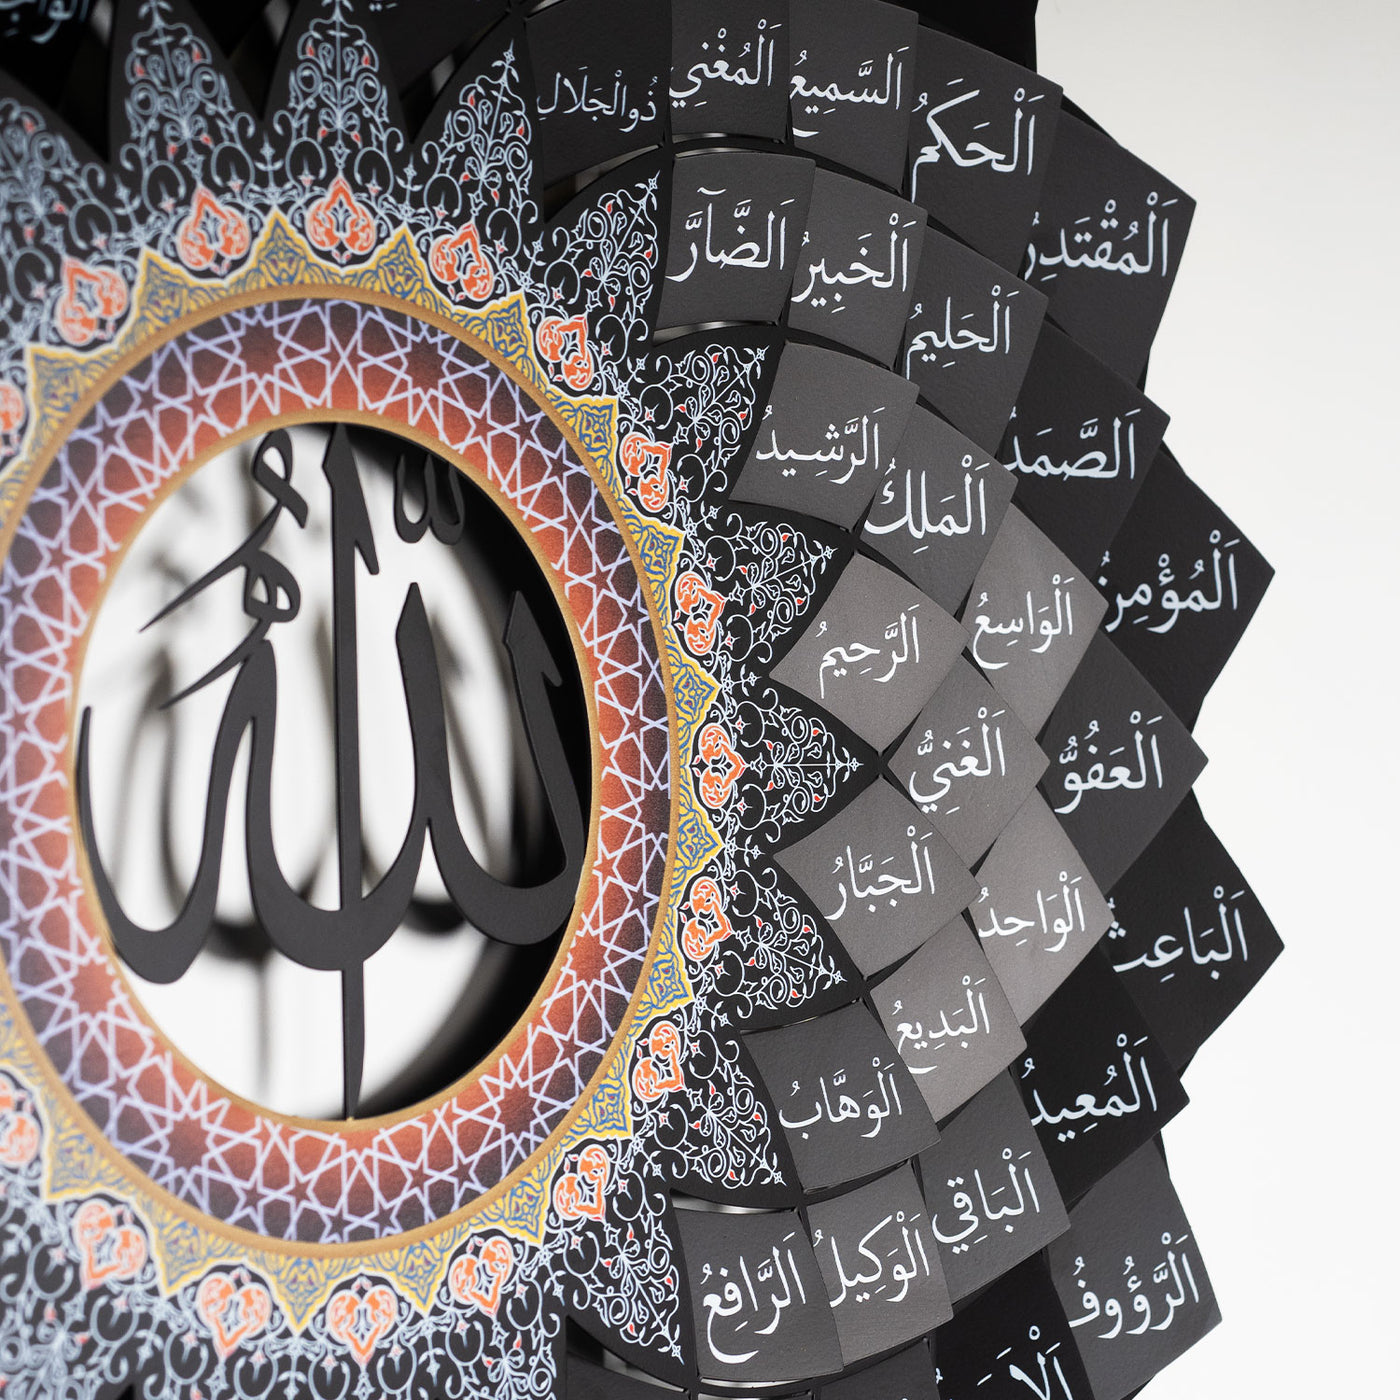 3D Colorful Metal 99 Names of Allah Wall Art (Asmaul Husna) - WAM173